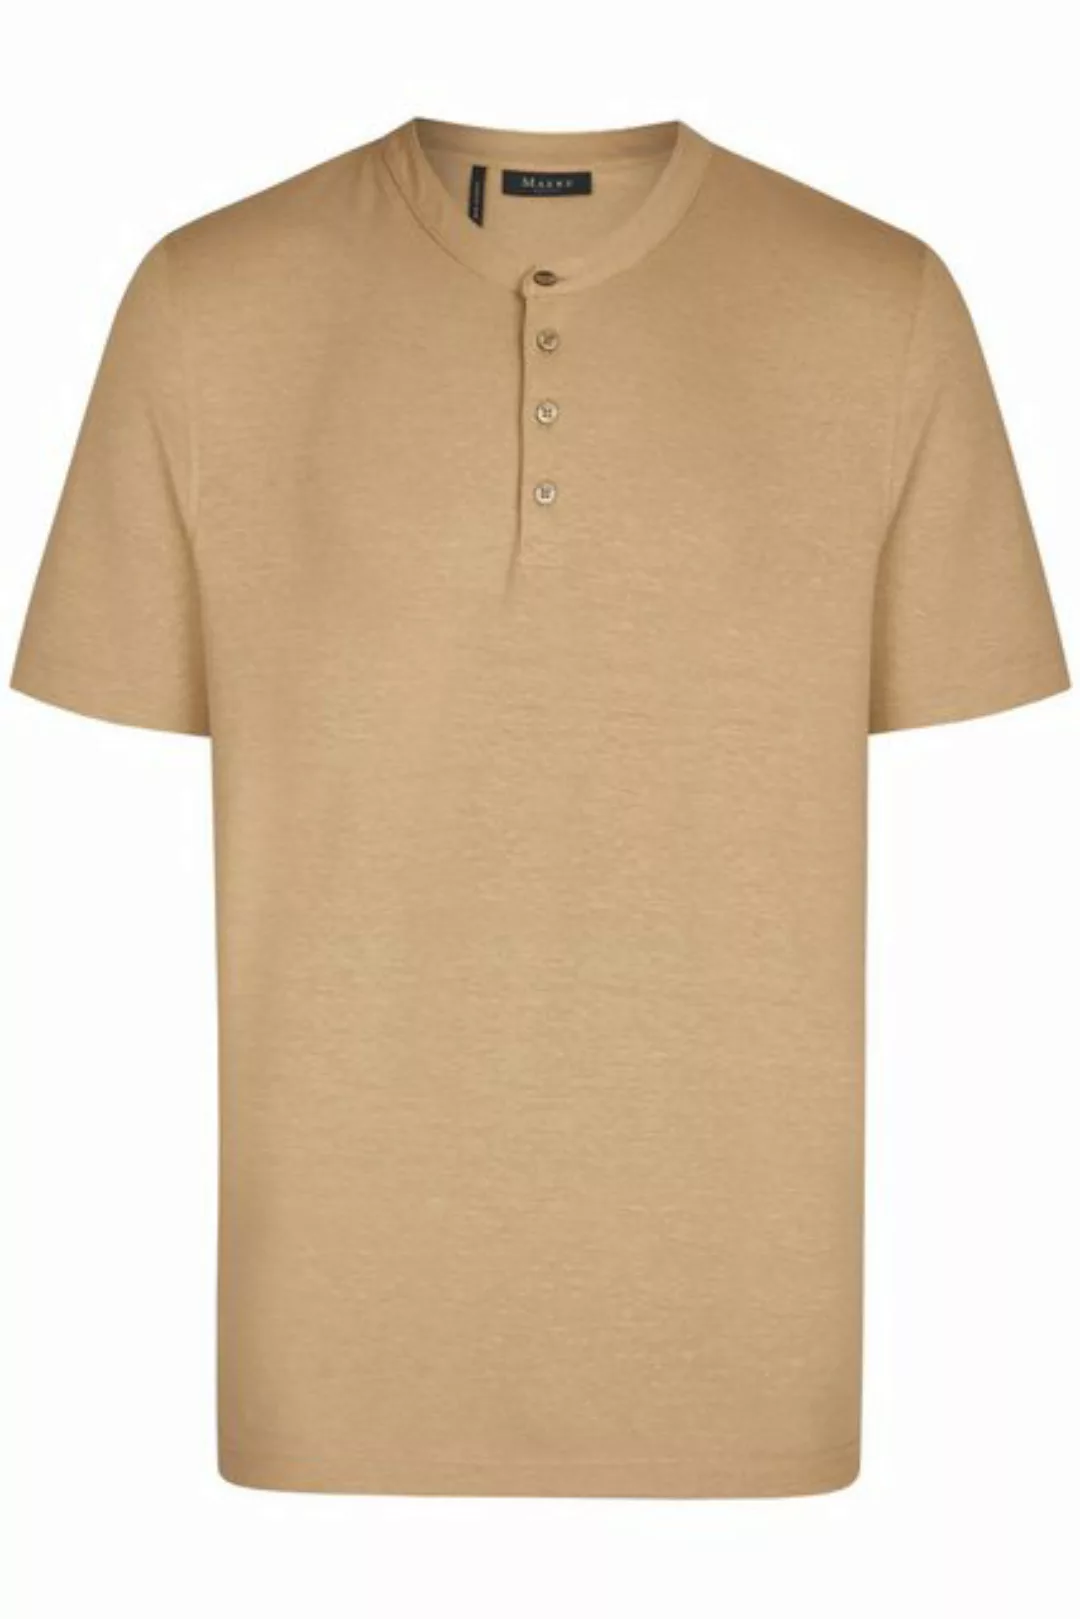 Maerz T-Shirt 607501/112 günstig online kaufen